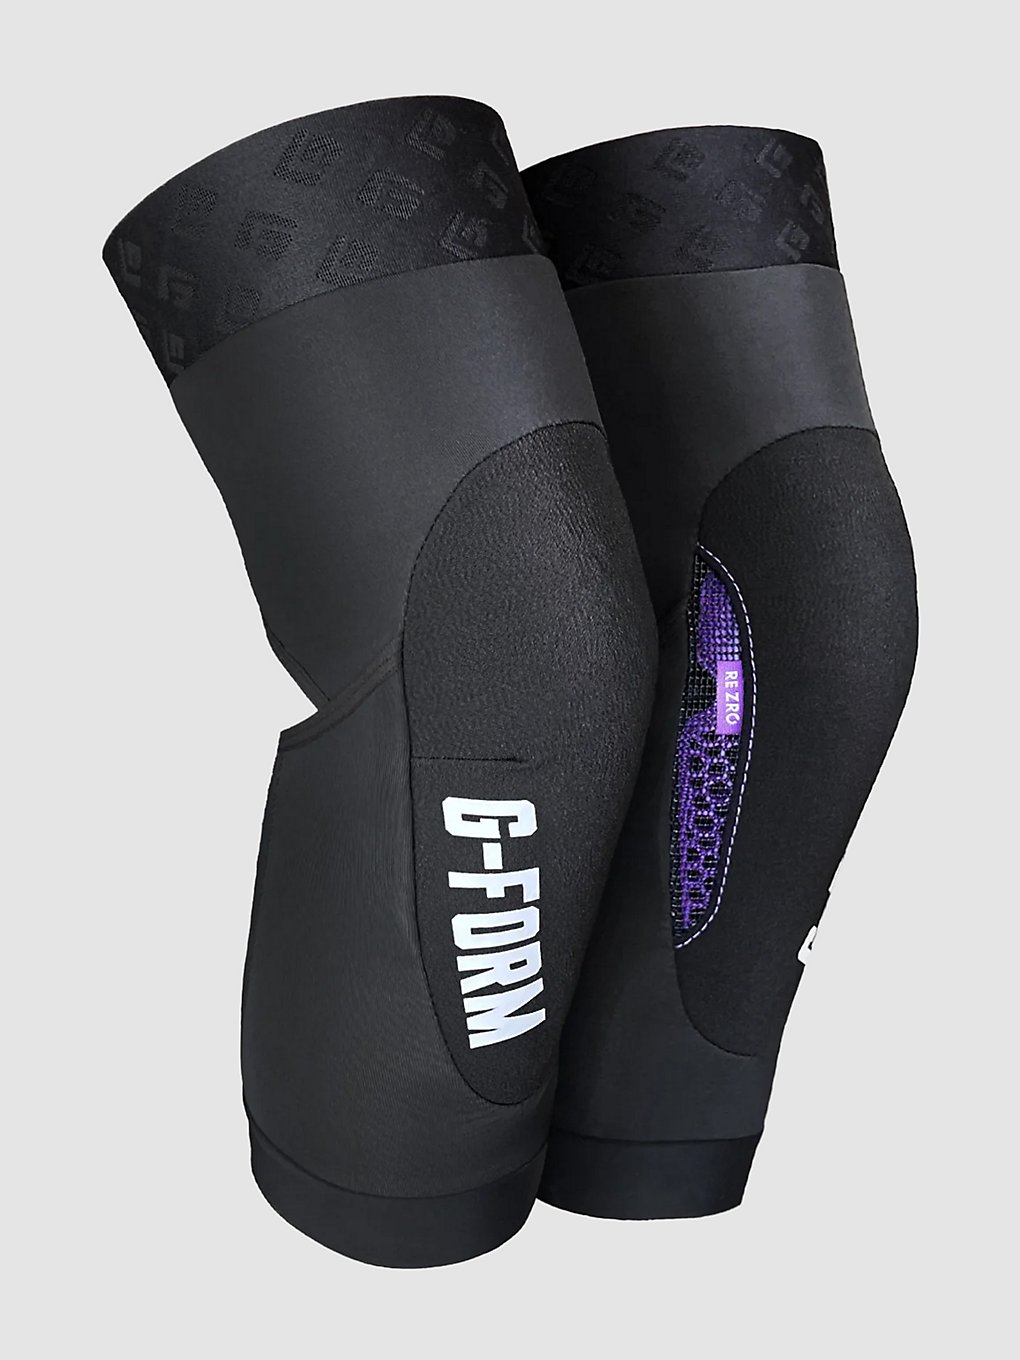 G-Form Terra Guard Knie beschermers zwart